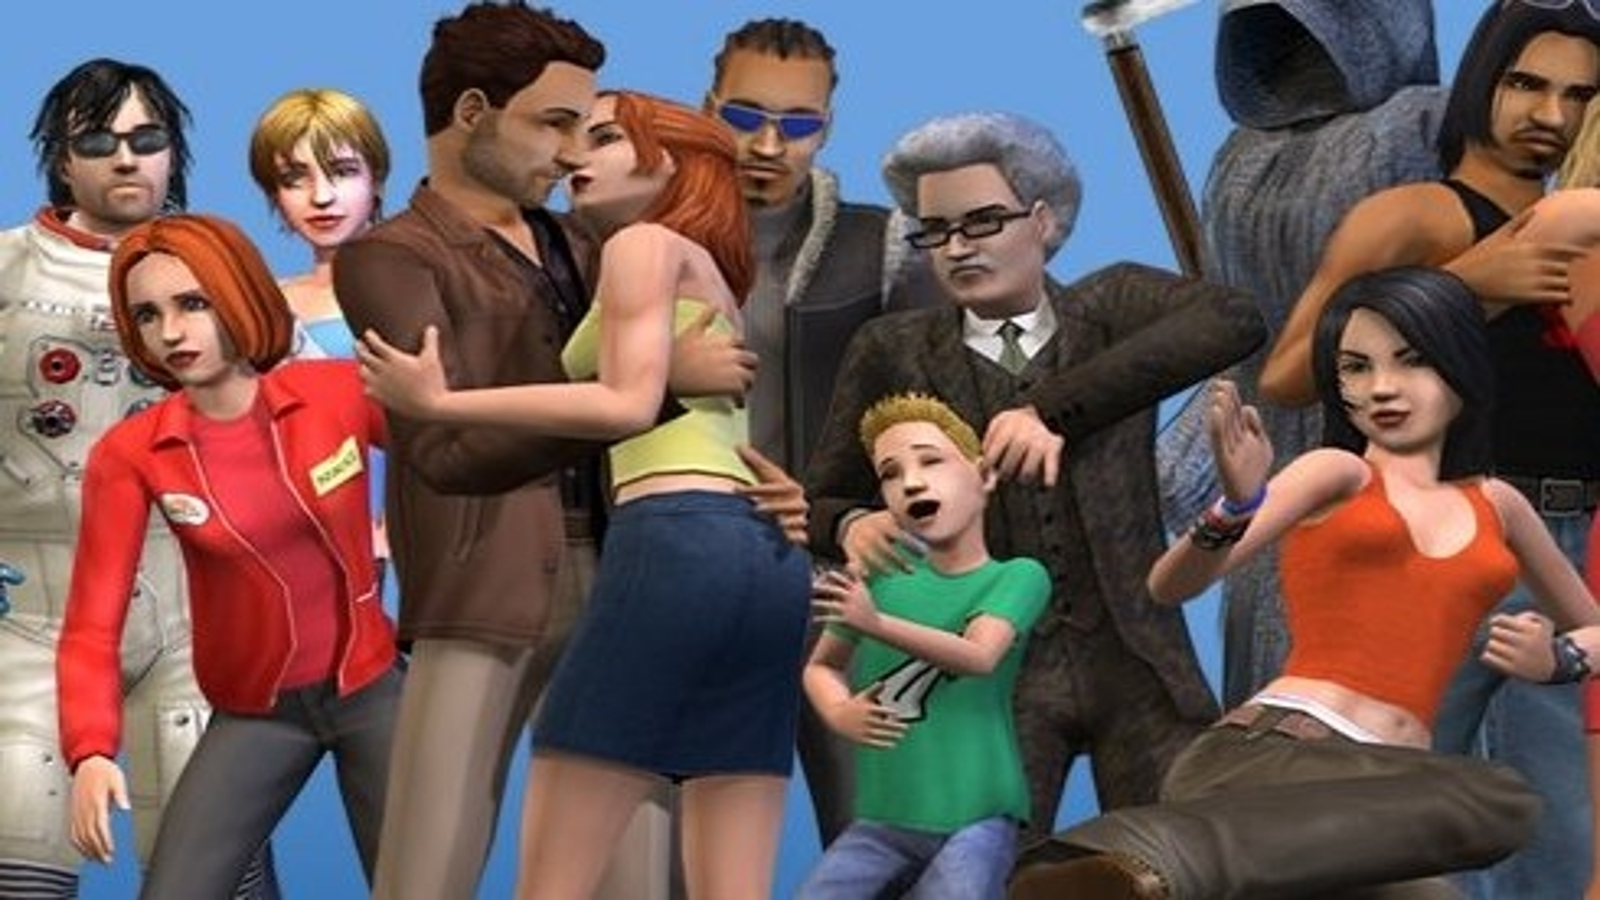 The Sims 2 Ultimate Collection de graça na Origin - GameBlast